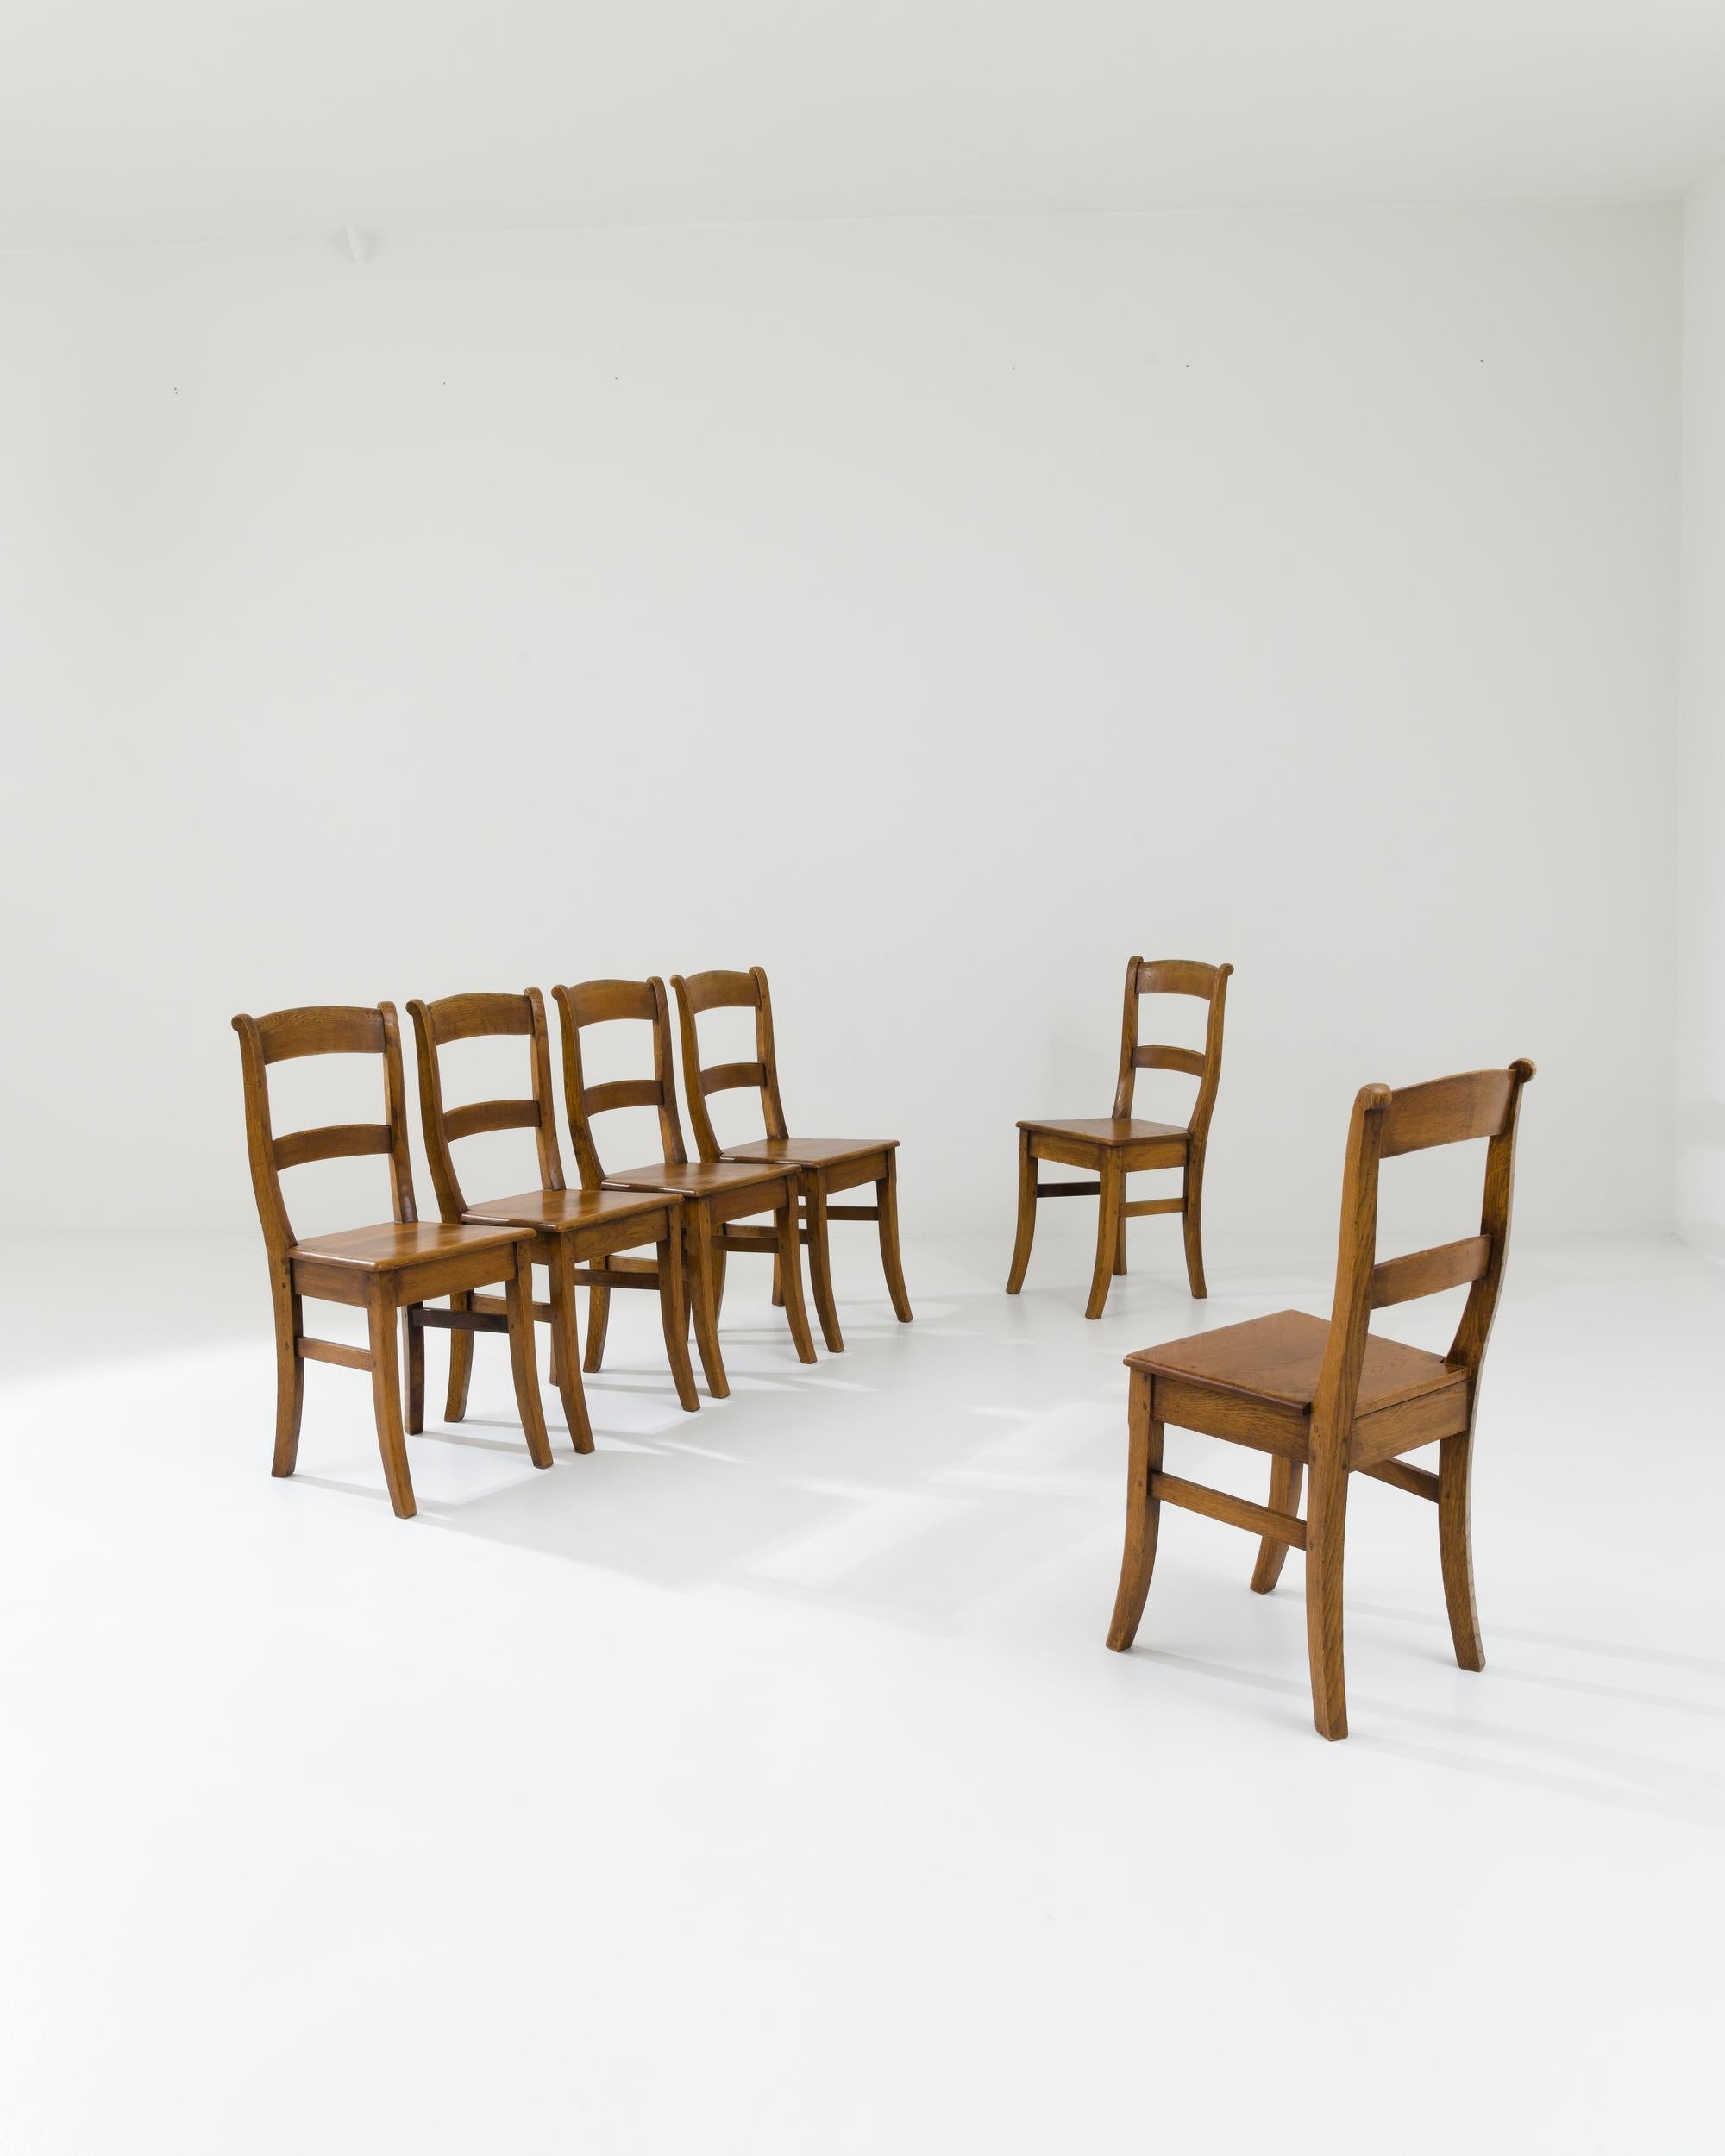 Ensemble de chaises de salle à manger en bois fabriquées en Belgique au XXe siècle. Avec leur dossier plongeant et leurs pieds gracieusement courbés, ces chaises exhalent la grâce de la simplicité. Le dossier haut confère à ces chaises une forme